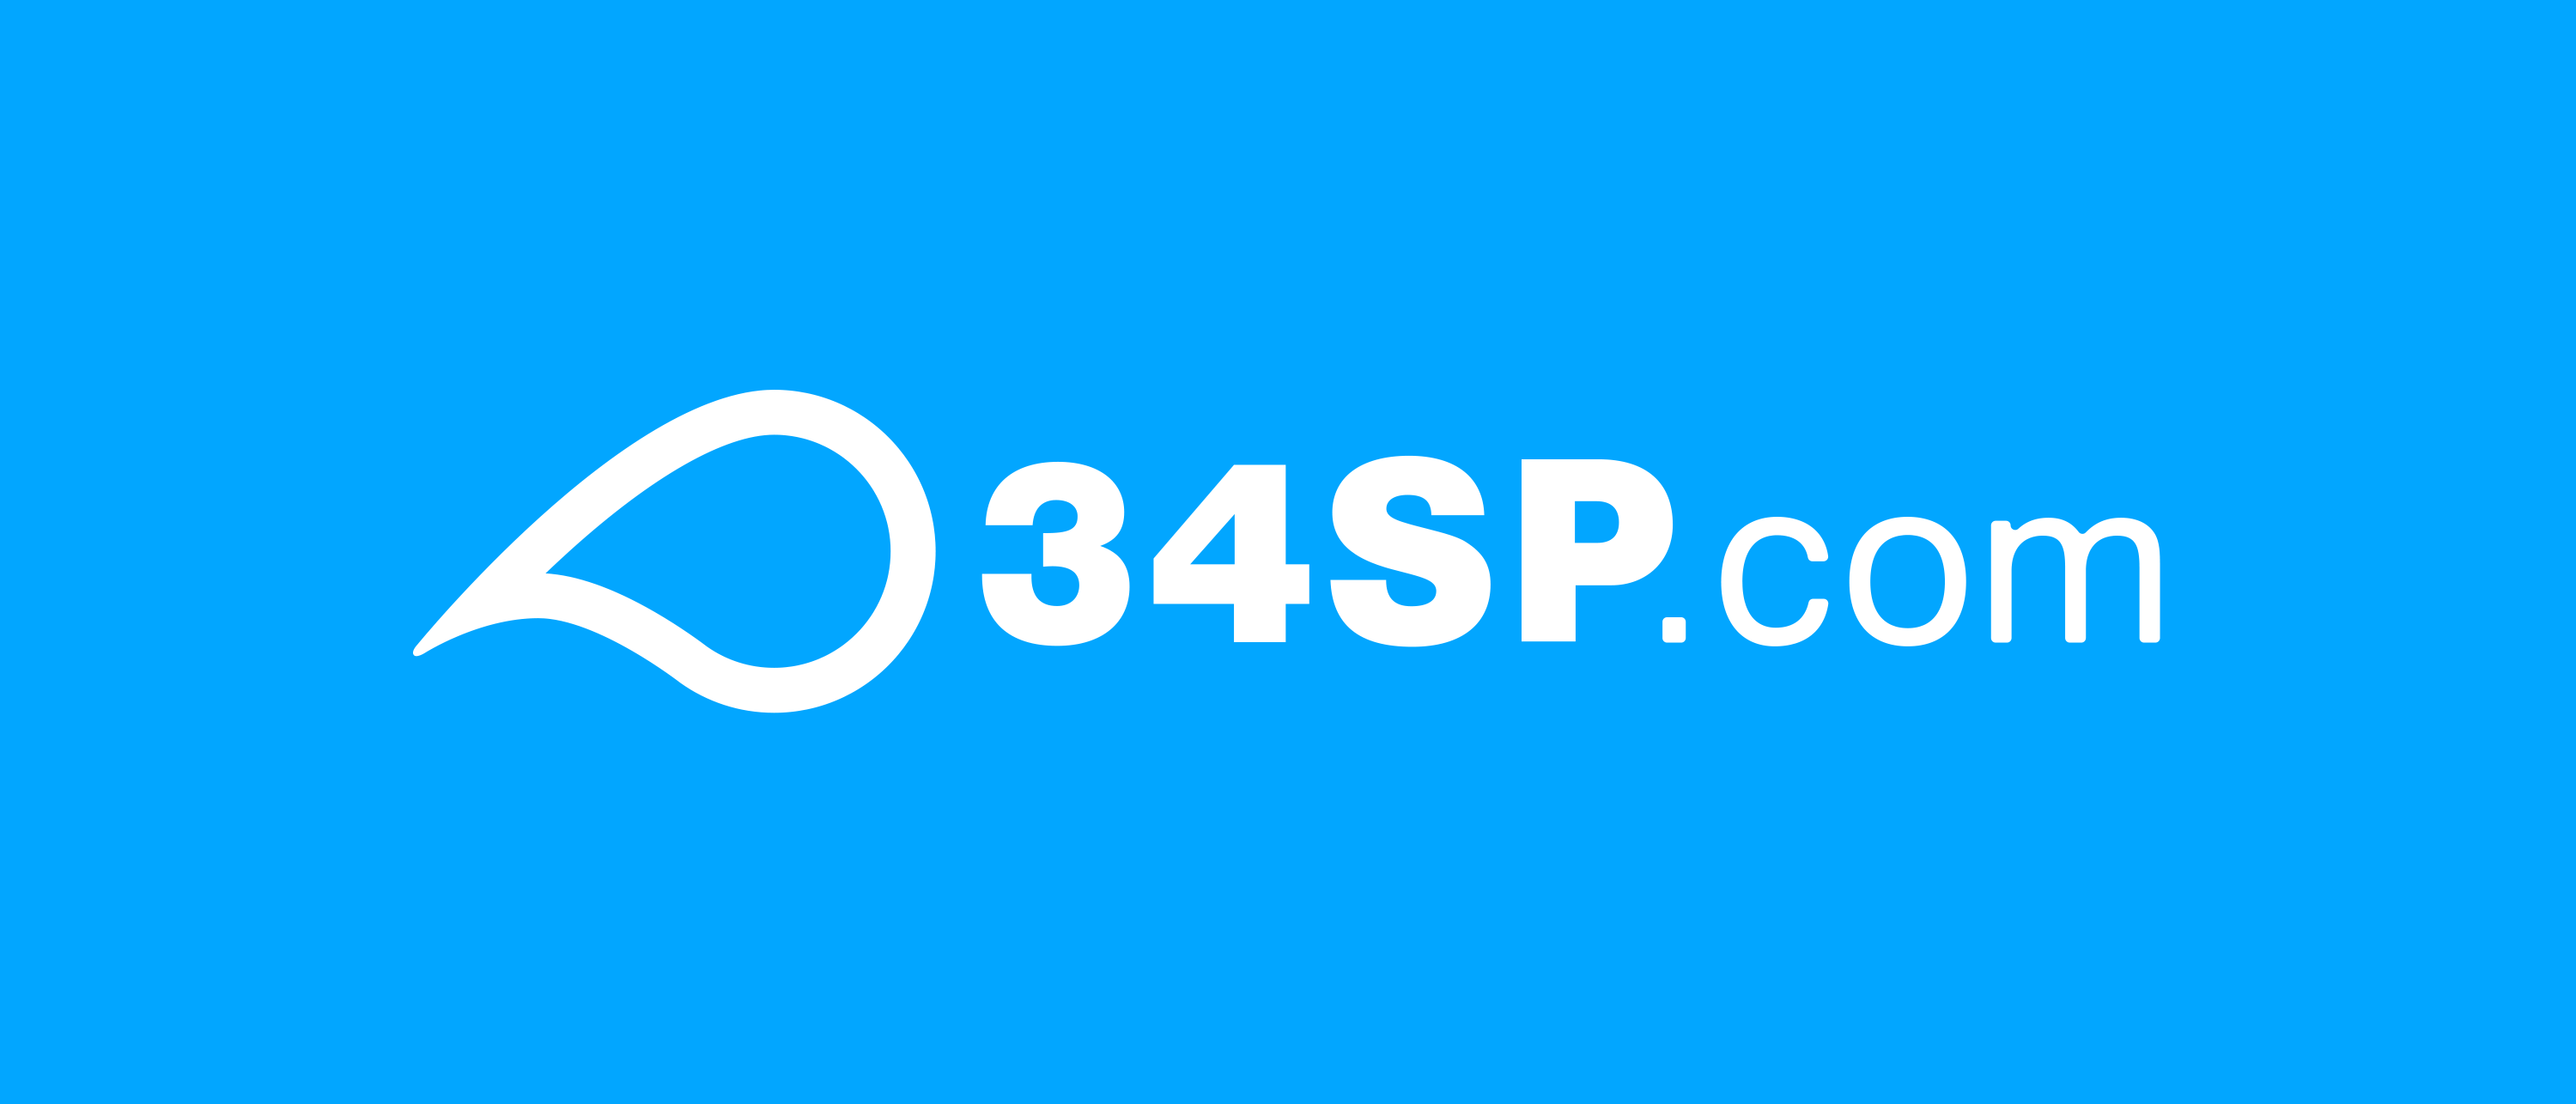 34SP.com Logo